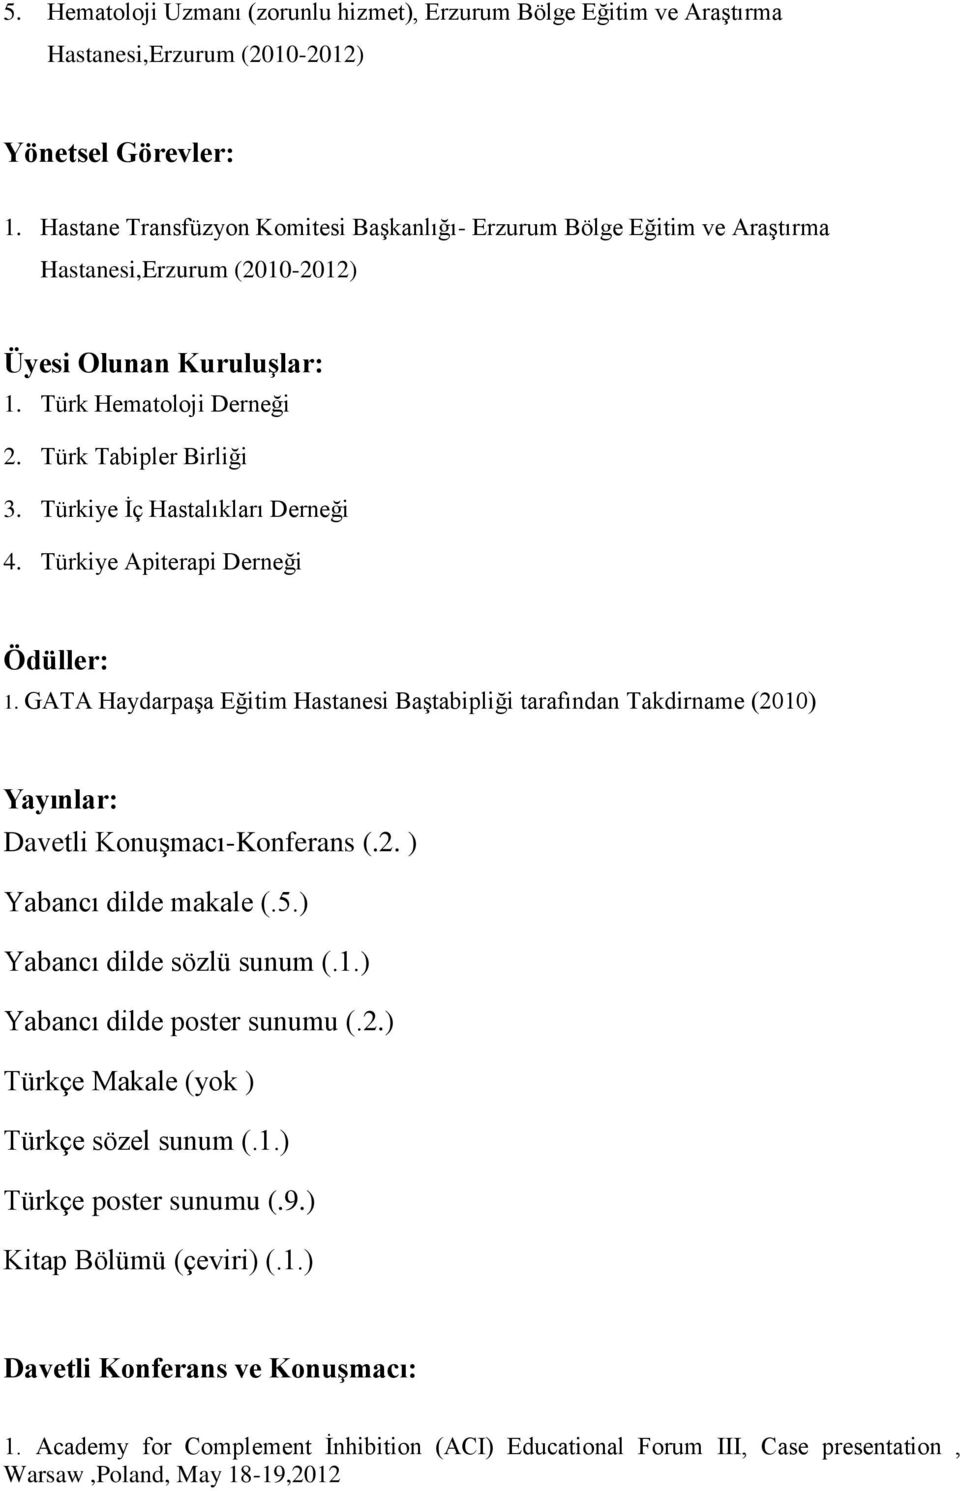 Türkiye İç Hastalıkları Derneği 4. Türkiye Apiterapi Derneği Ödüller: 1. GATA Haydarpaşa Eğitim Hastanesi Baştabipliği tarafından Takdirname (2010) Yayınlar: Davetli Konuşmacı-Konferans (.2. ) Yabancı dilde makale (.